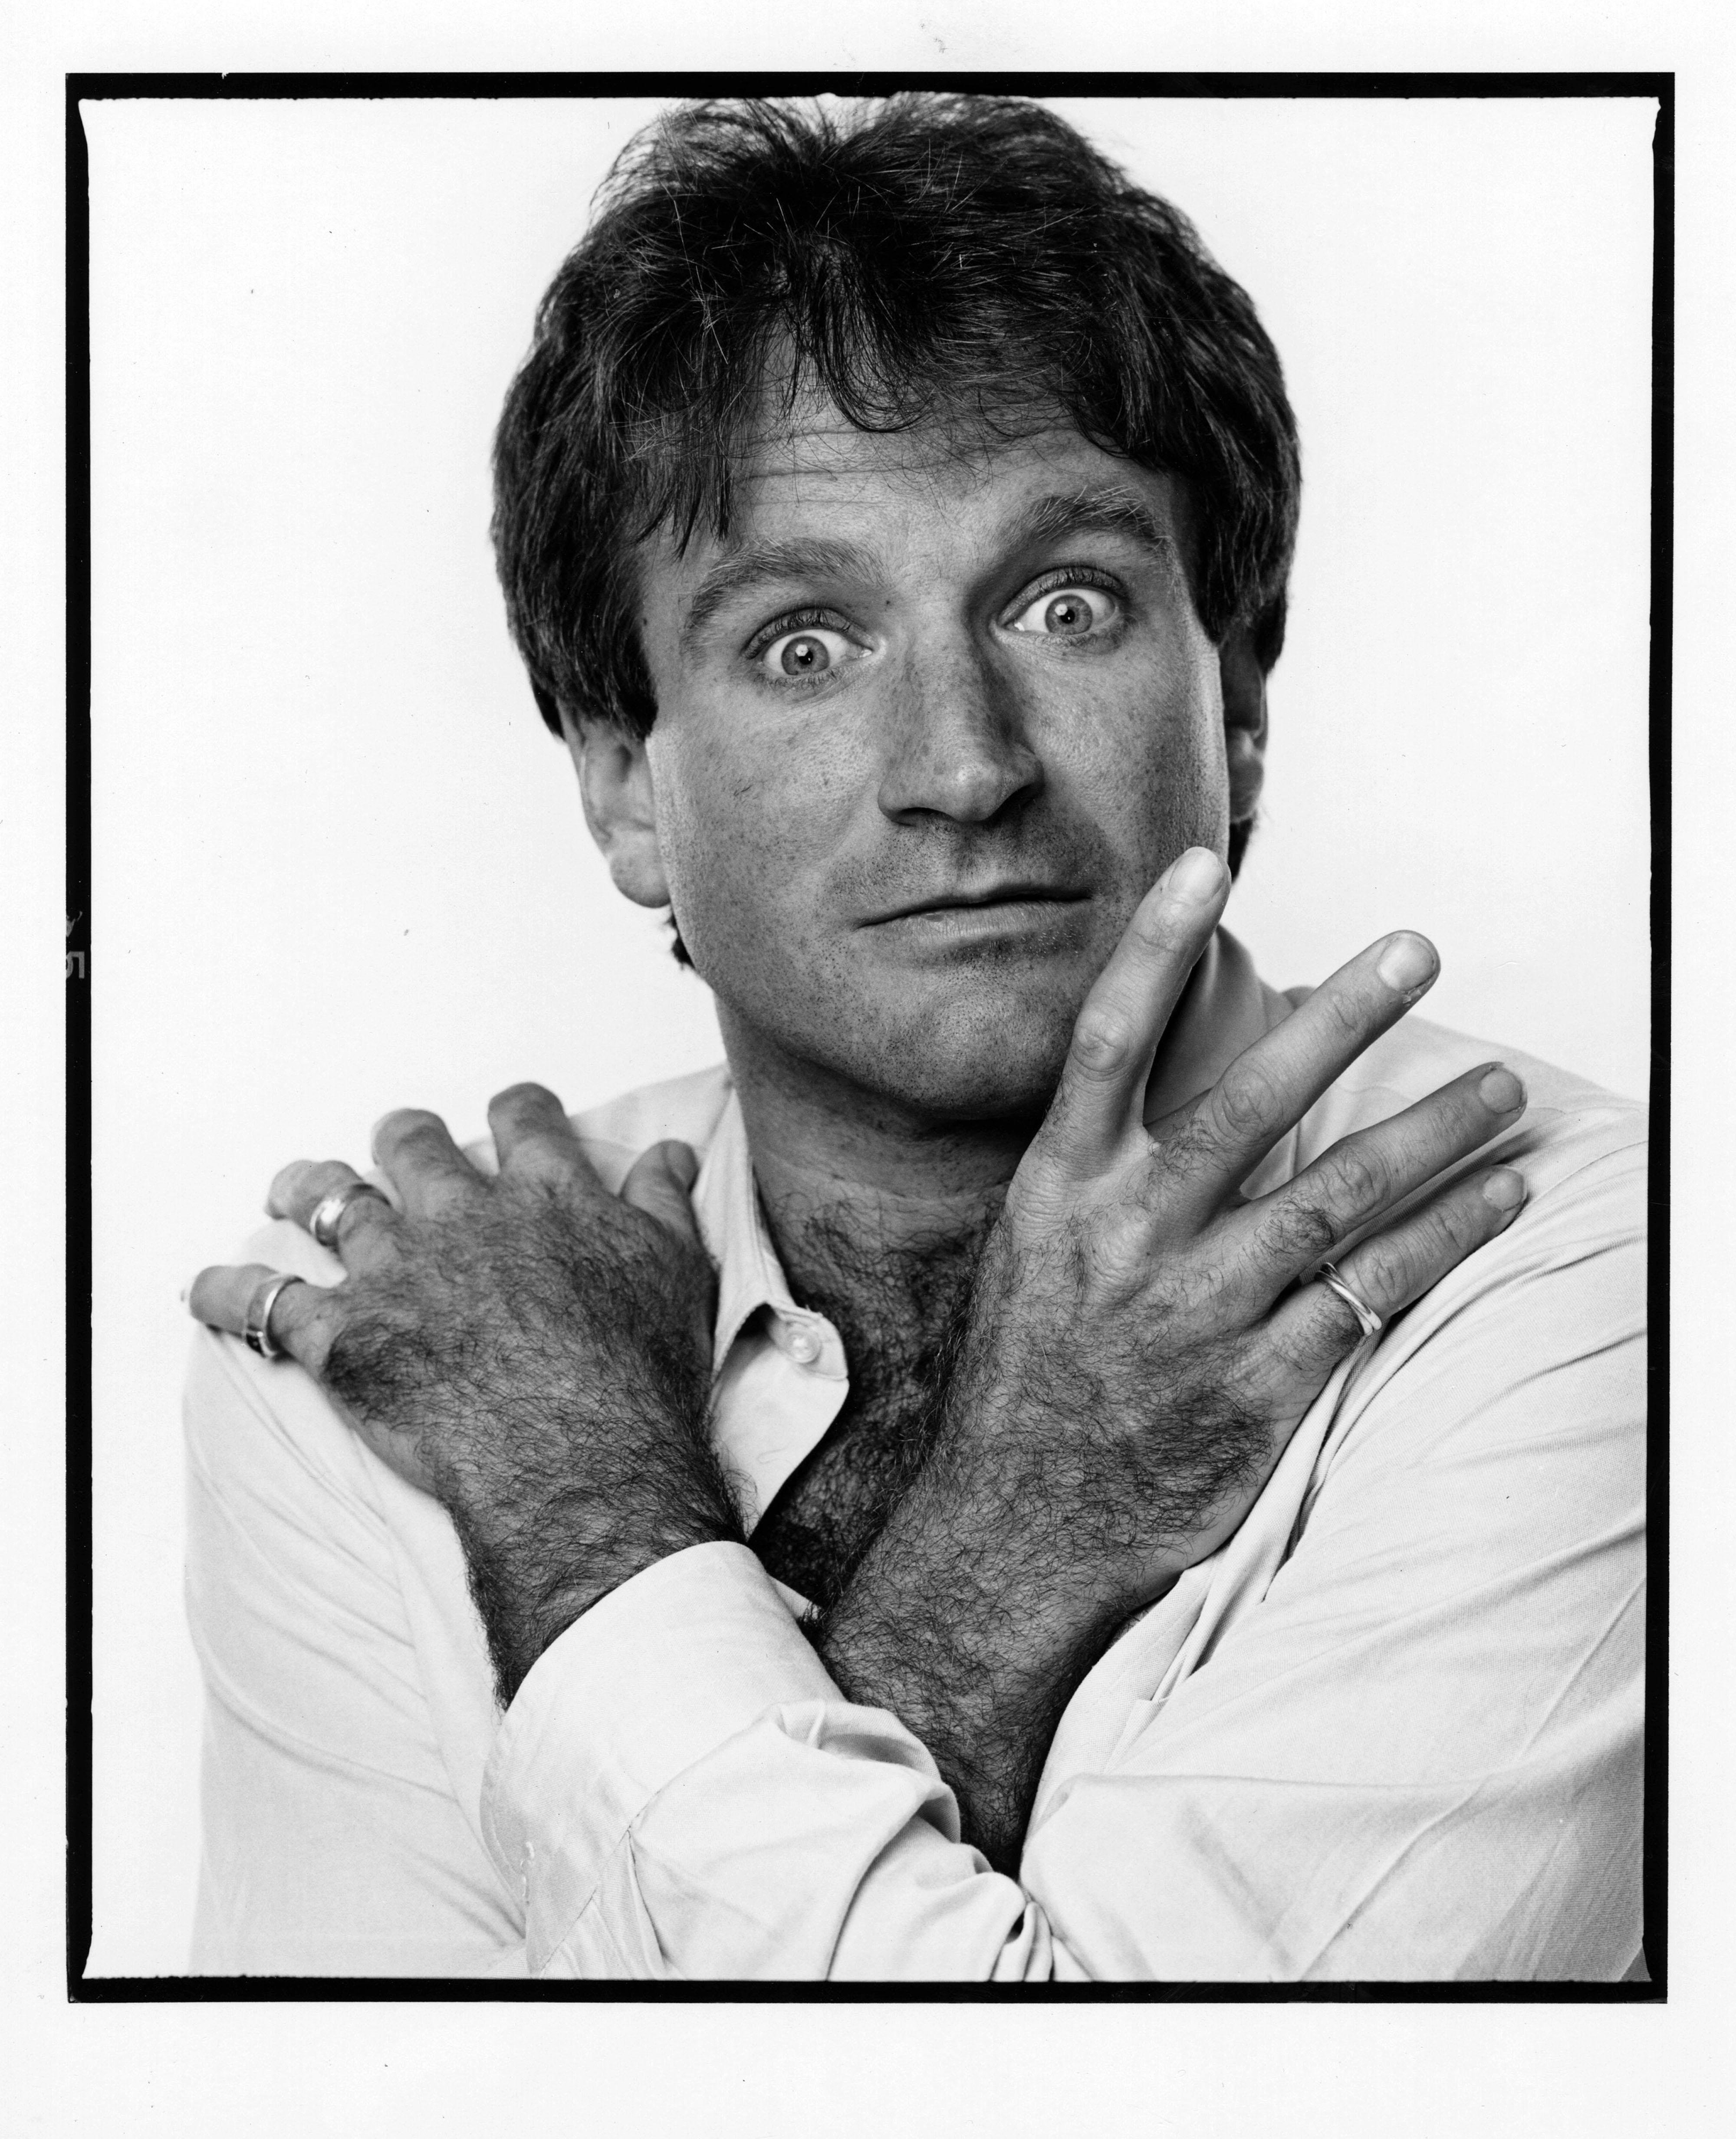 11 x 14" Silbergelatine-Foto des Schauspielers und Komikers Robin Williams, aufgenommen 1984. Verso signiert von Jack Mitchell.  Kommt direkt aus den Jack Mitchell Archives mit einem Echtheitszertifikat.

 Jack Mitchells (1925-2013) umfangreiches